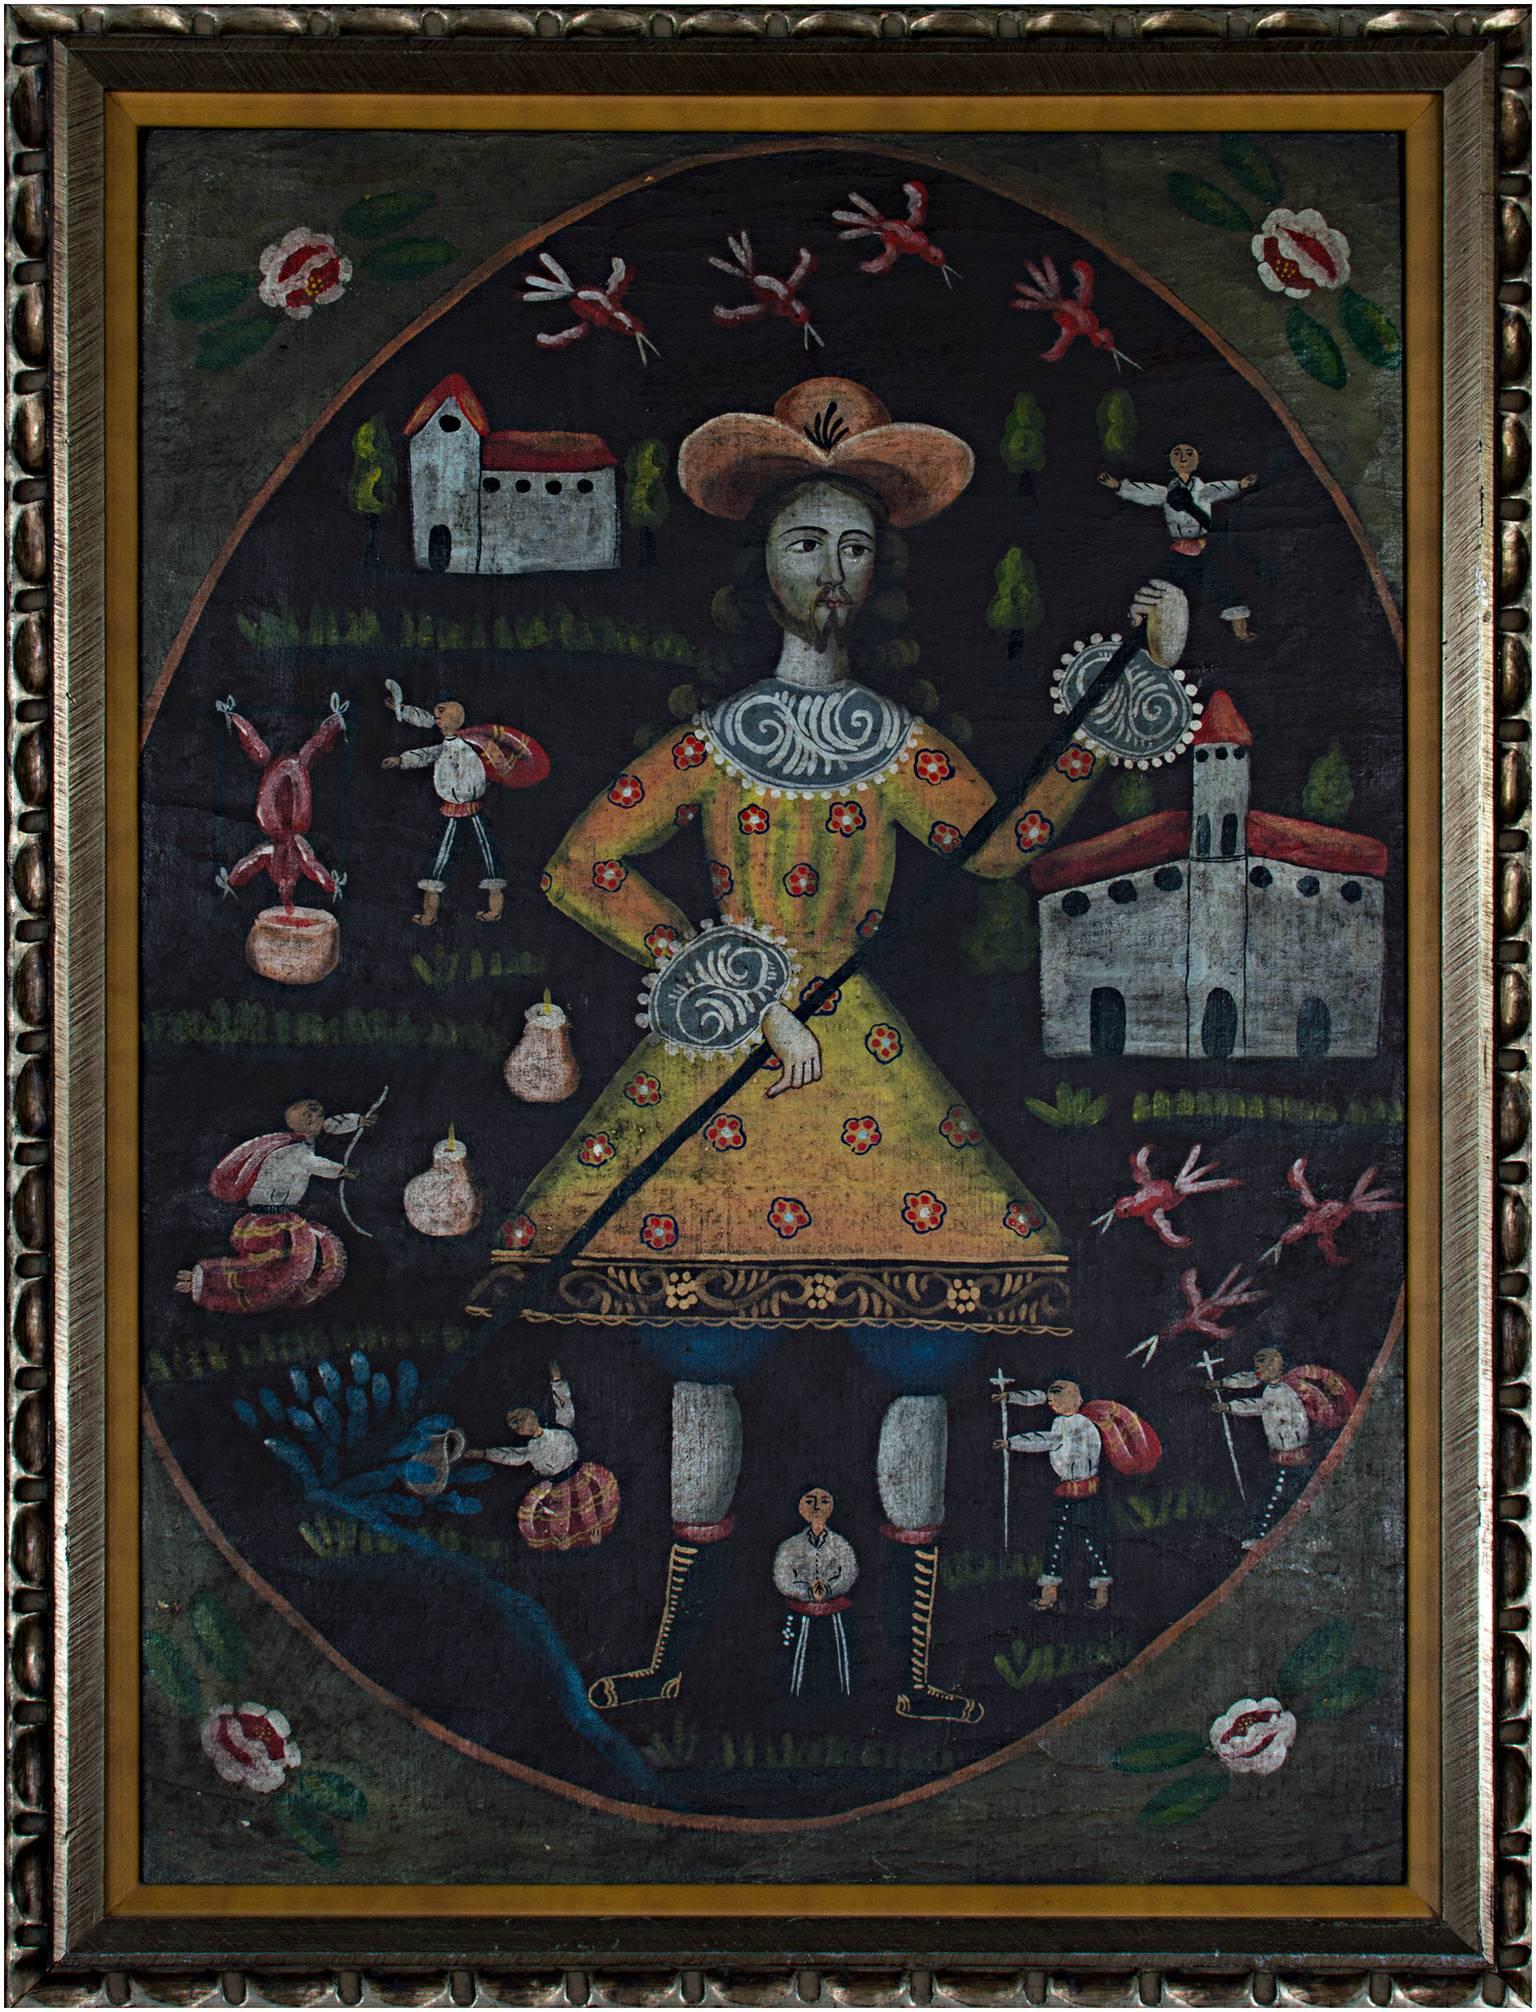 Dieses Ölgemälde der Volkskunst wurde von einem unbekannten peruanischen Künstler geschaffen. Es zeigt einen Mann in einem gelben Kostüm, der von anderen, kleineren Figuren umgeben ist. Hinter ihm befinden sich eine Kirche und ein weiteres Gebäude.